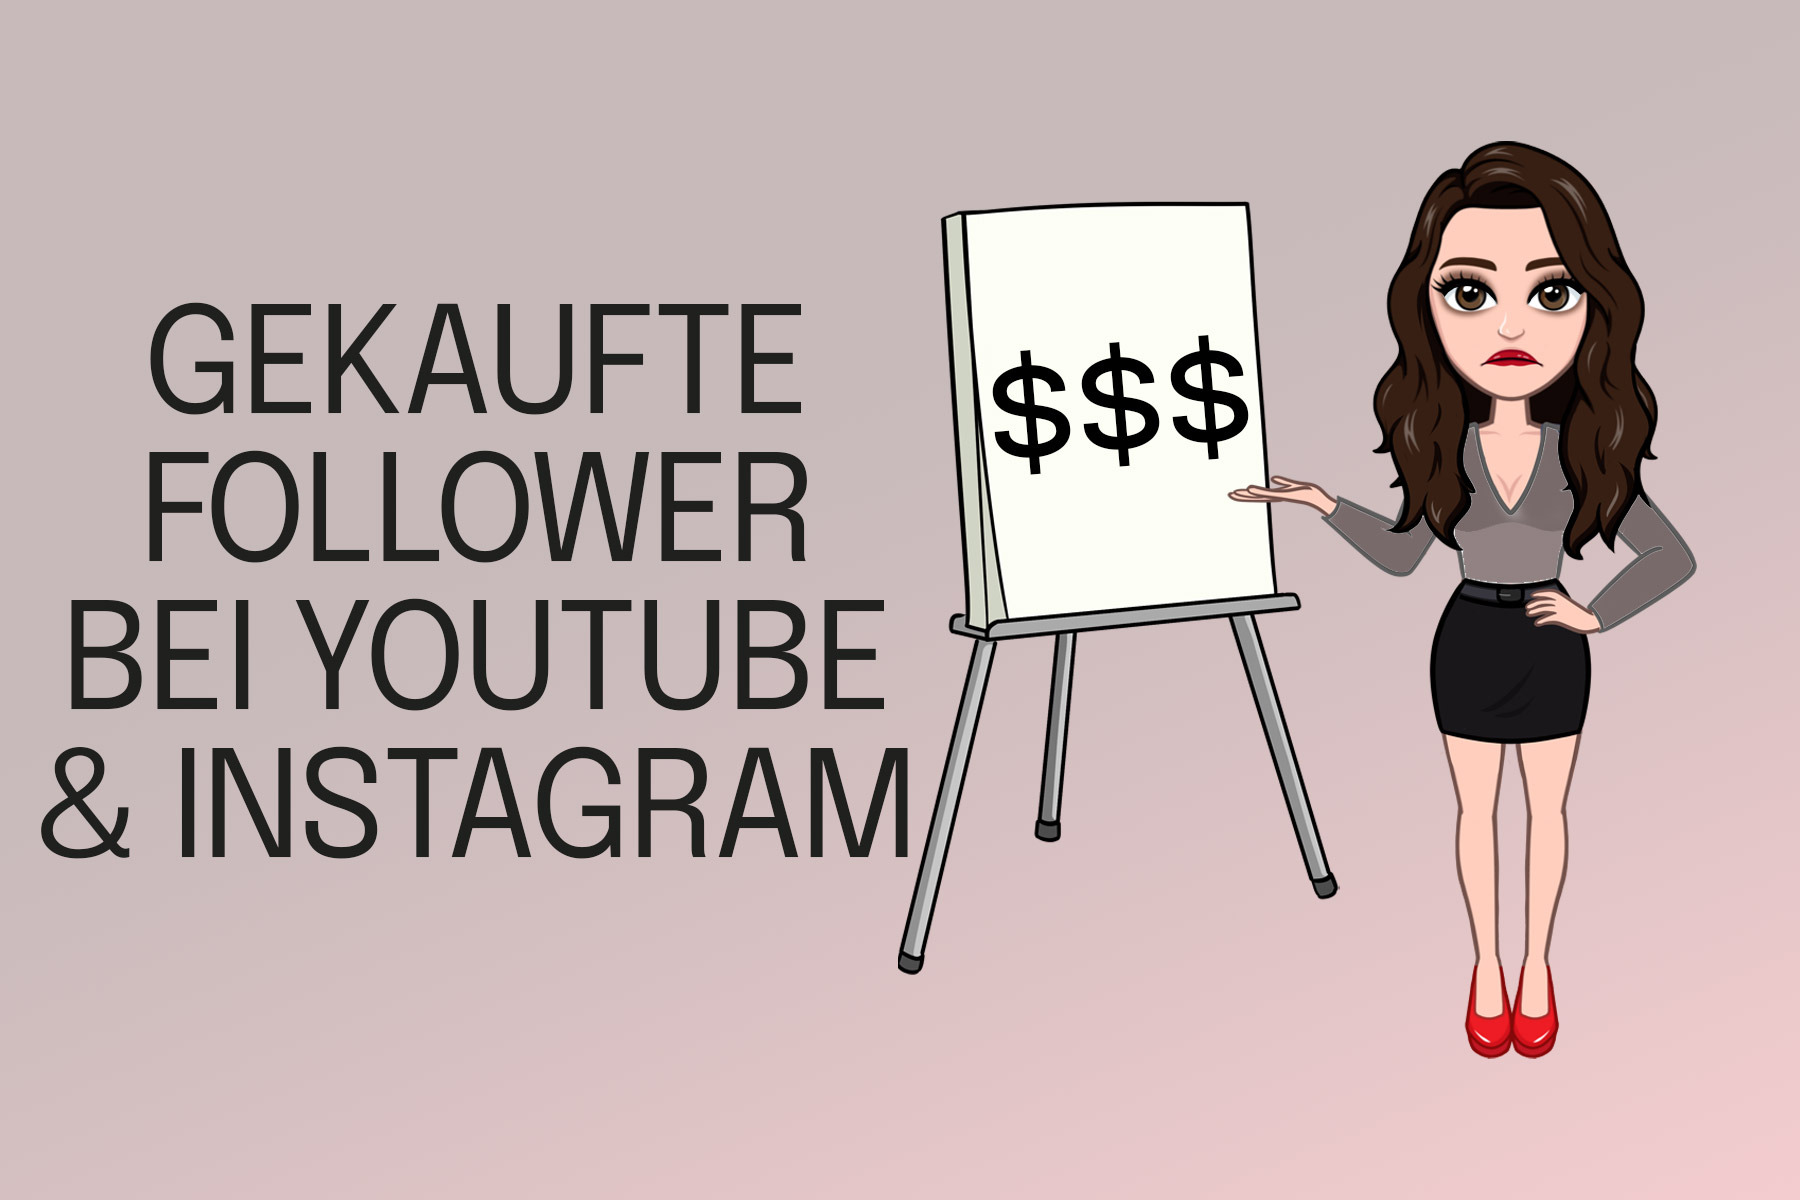 Gekaufte Follower und Likes - Instagram, Facebook, YouTube